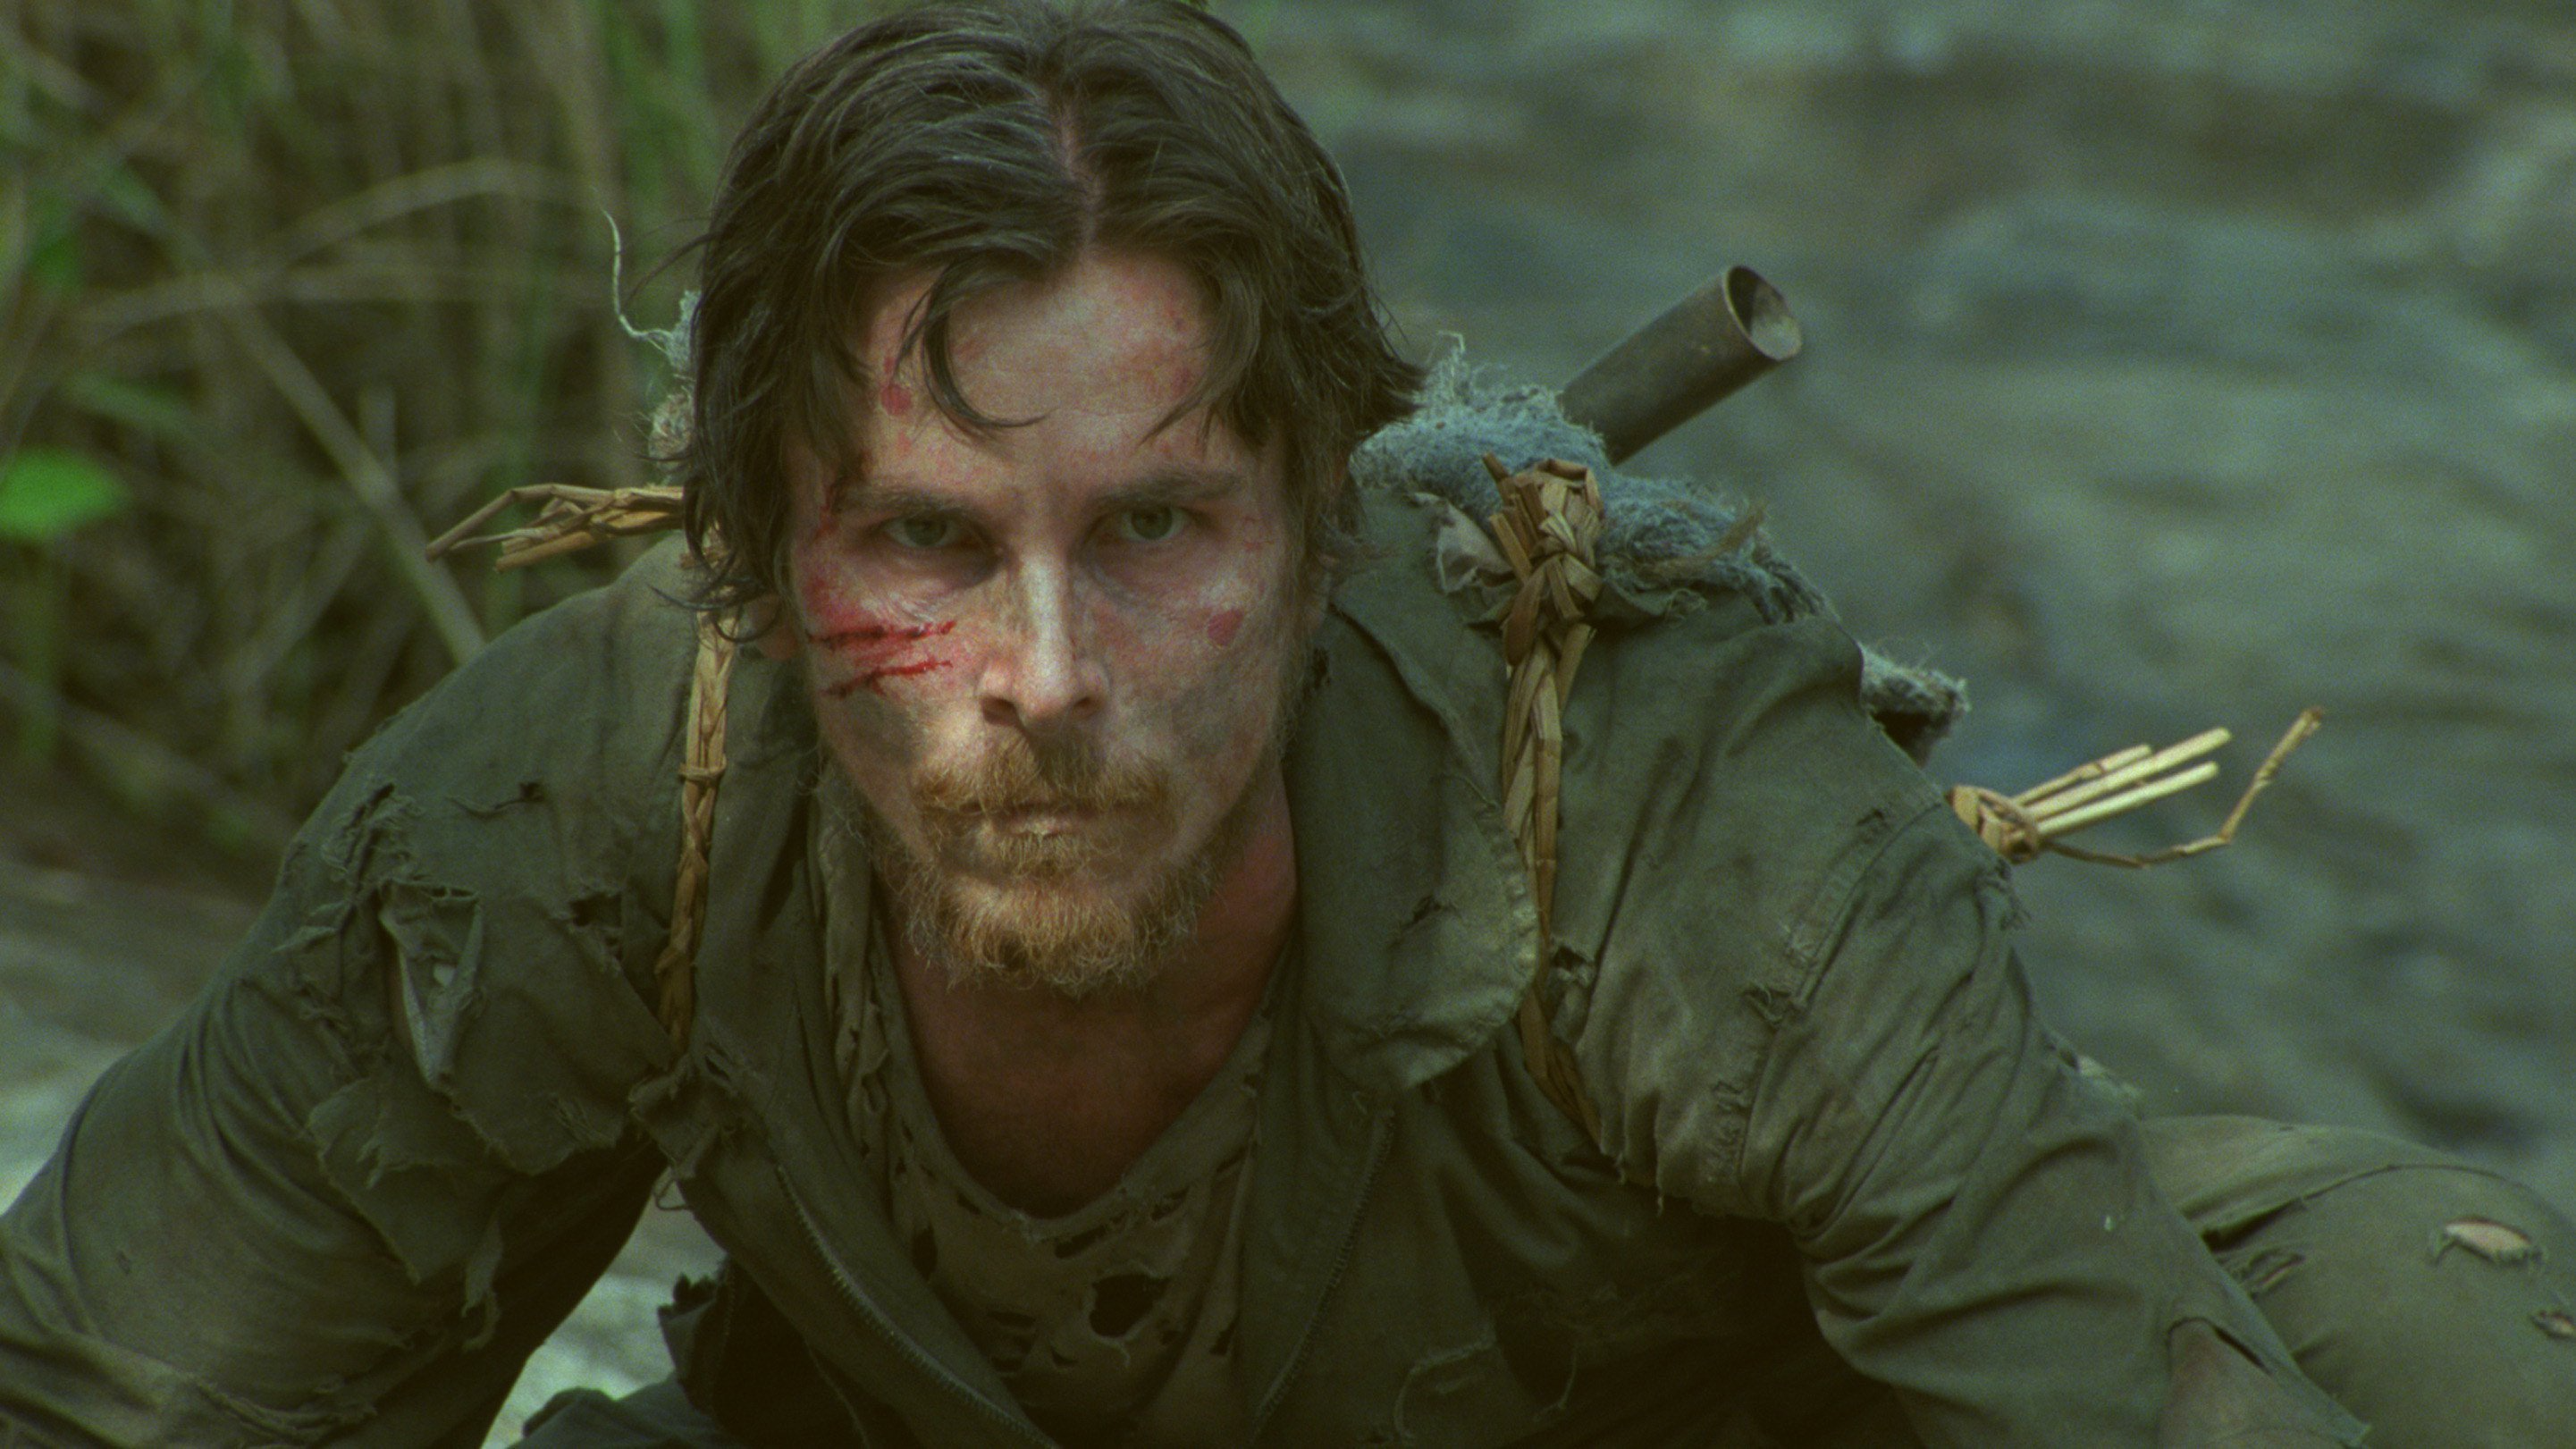 Ce soir à la TV : un incroyable film d'évasion avec Christian Bale adapté de faits réels